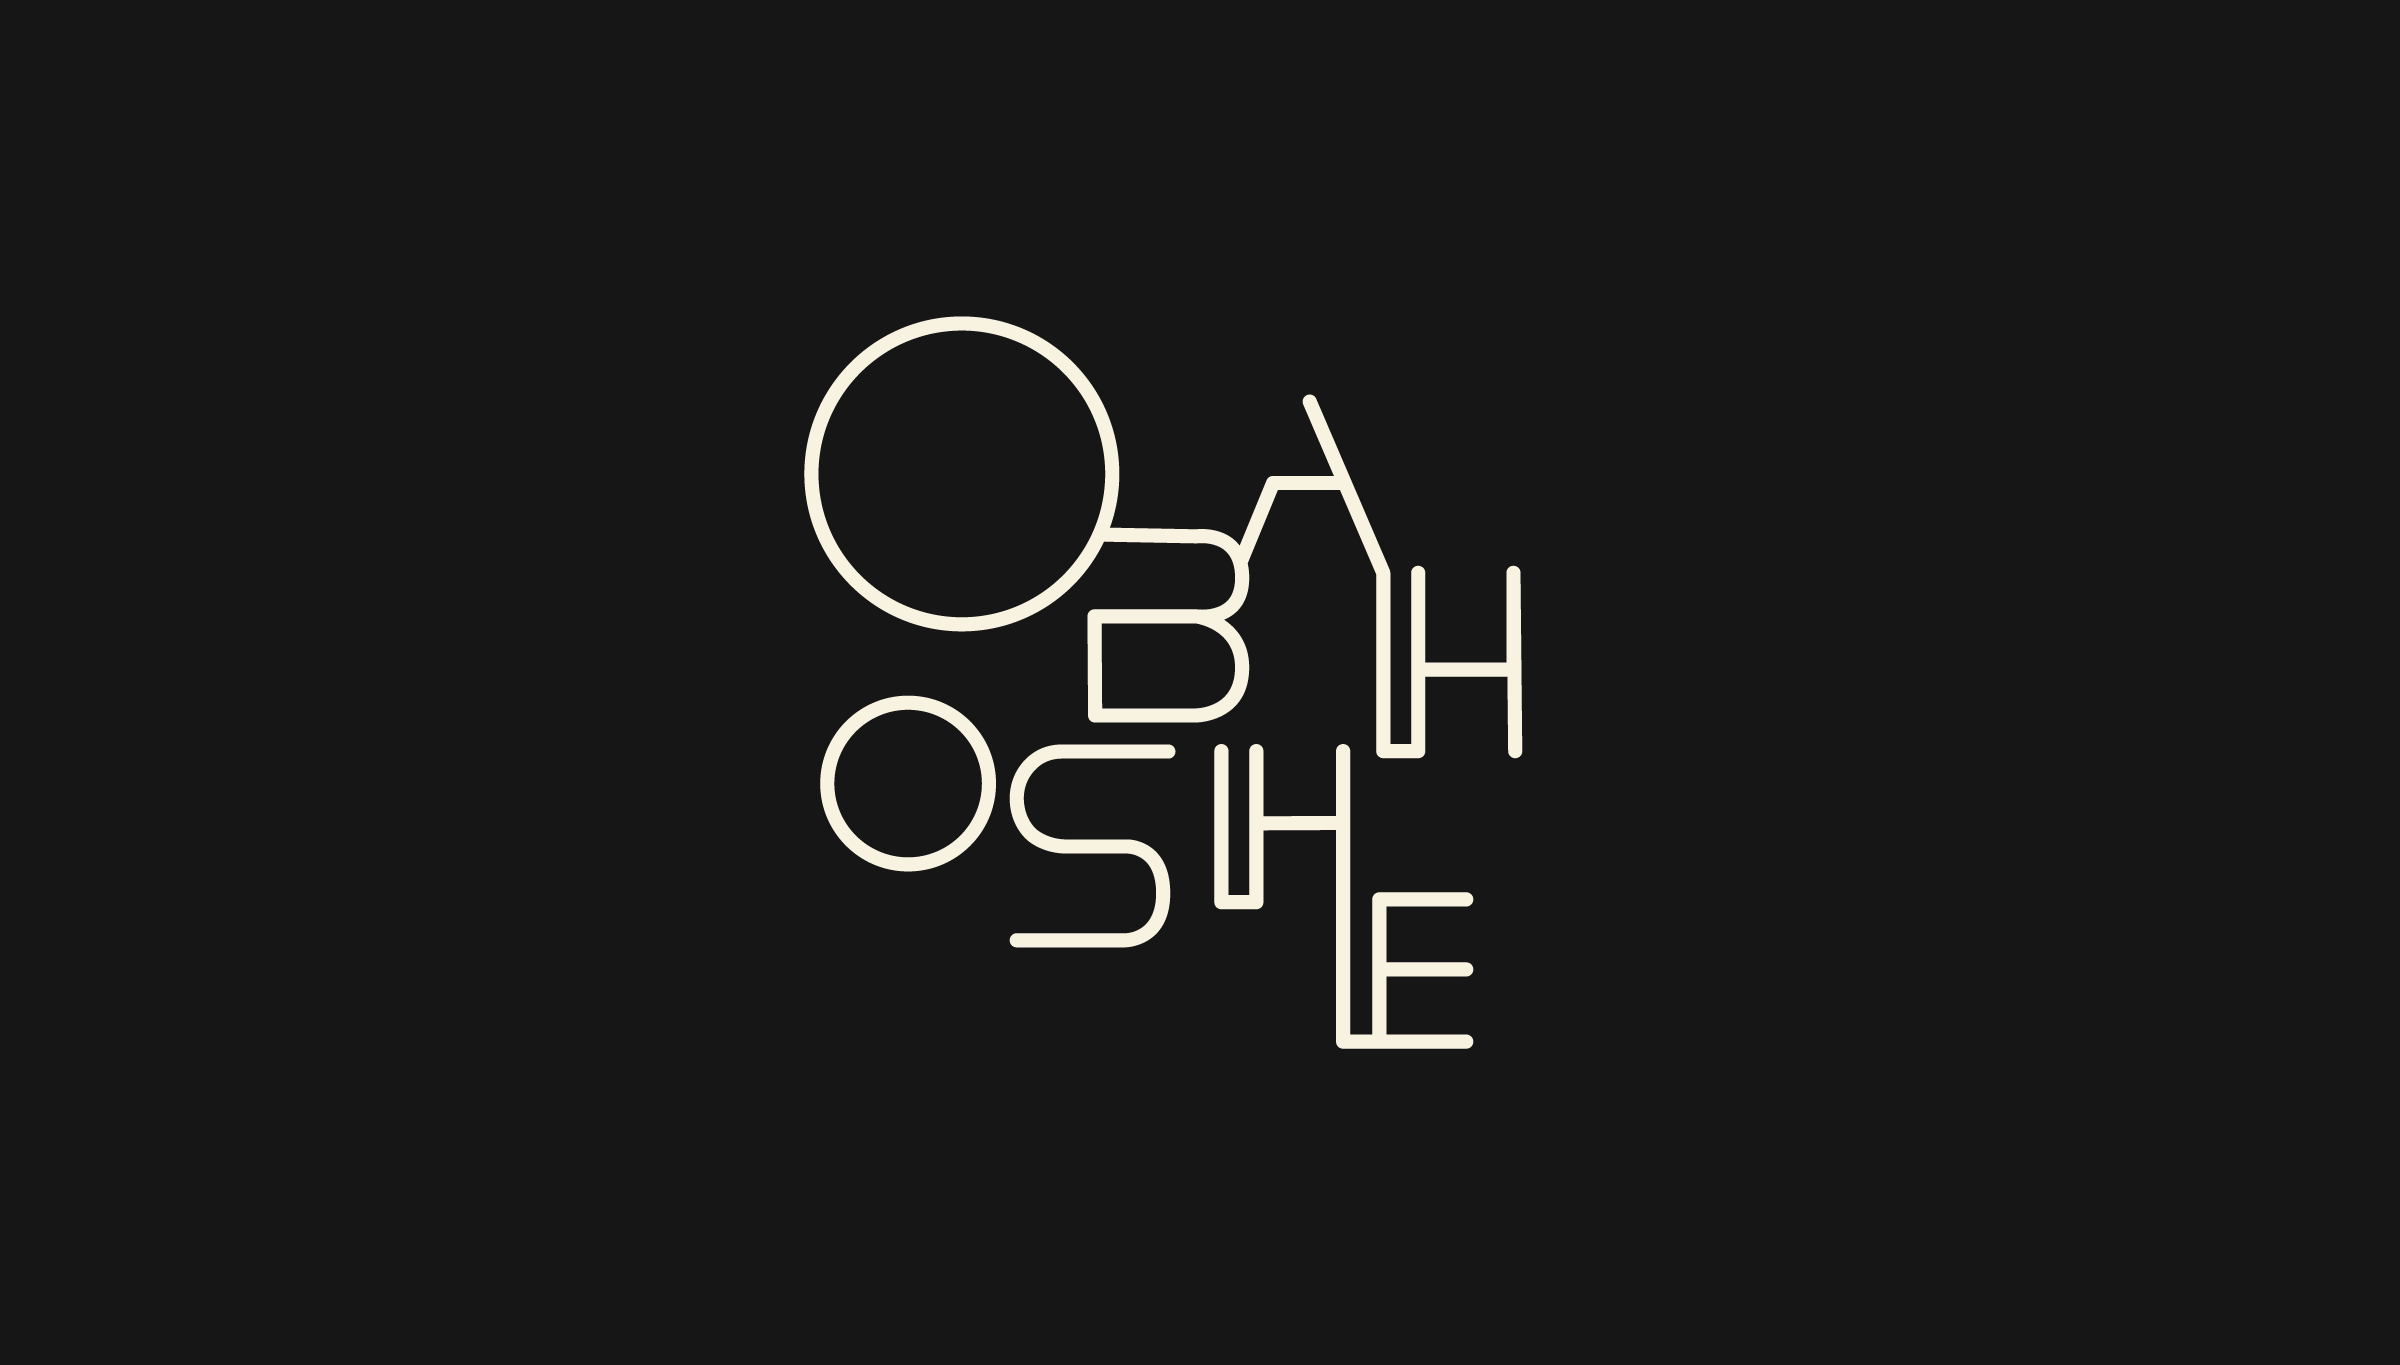 Obahoshe Rum logo